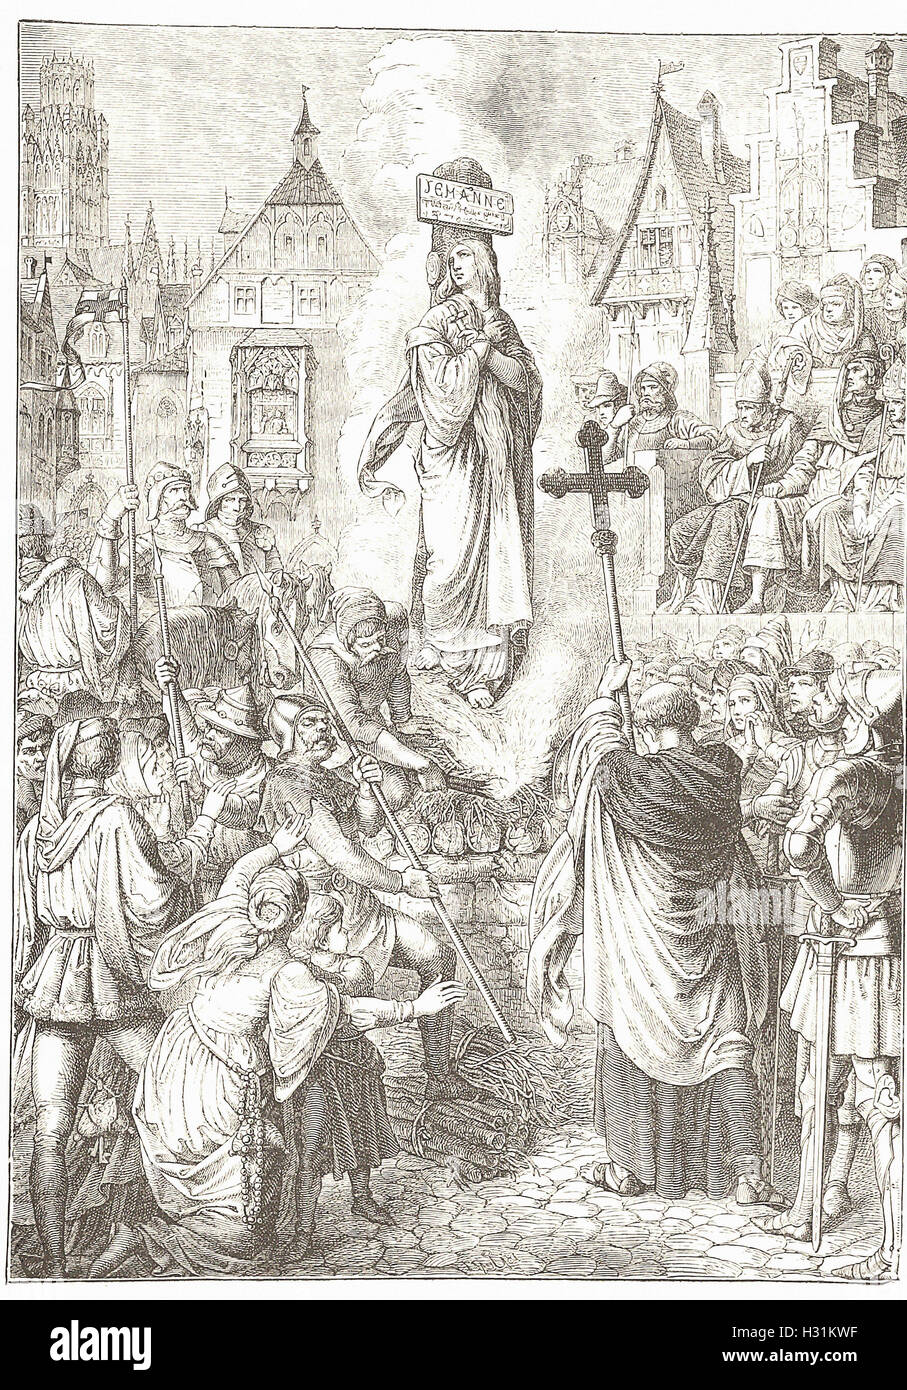 L'EXÉCUTION DE JEANNE D'ARC - de 'Cassell's Illustrated Histoire universelle" - 1882 Banque D'Images